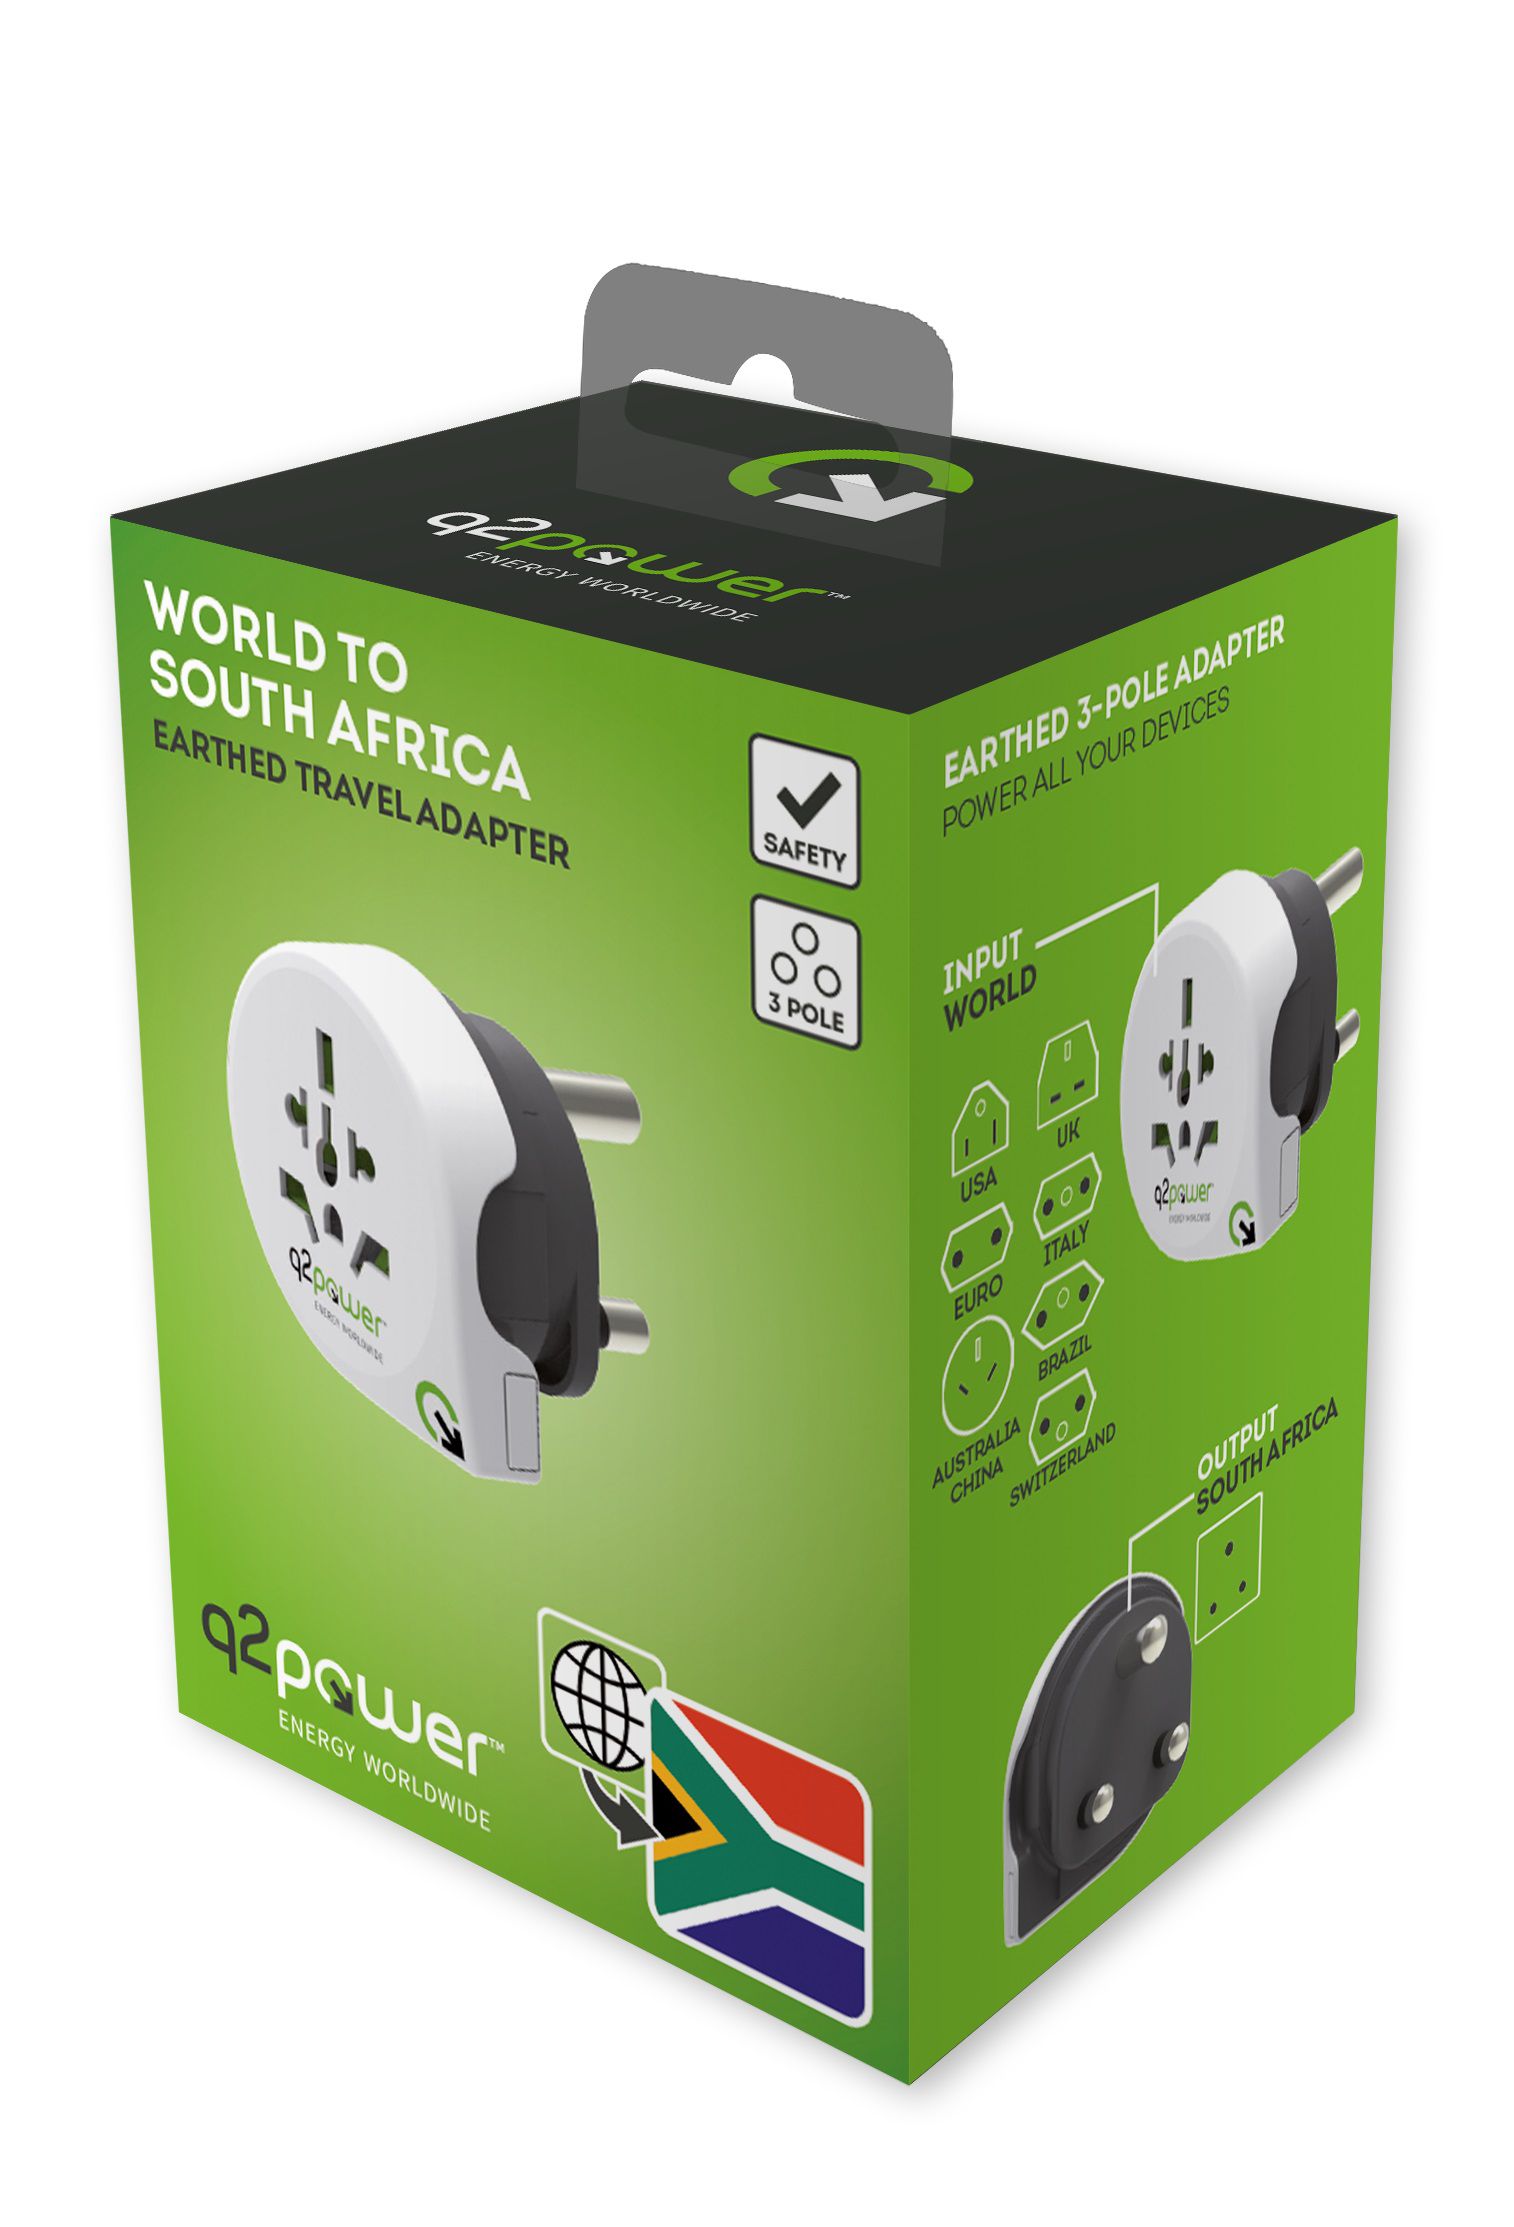 Q2 Power Welt Adapter South Africa